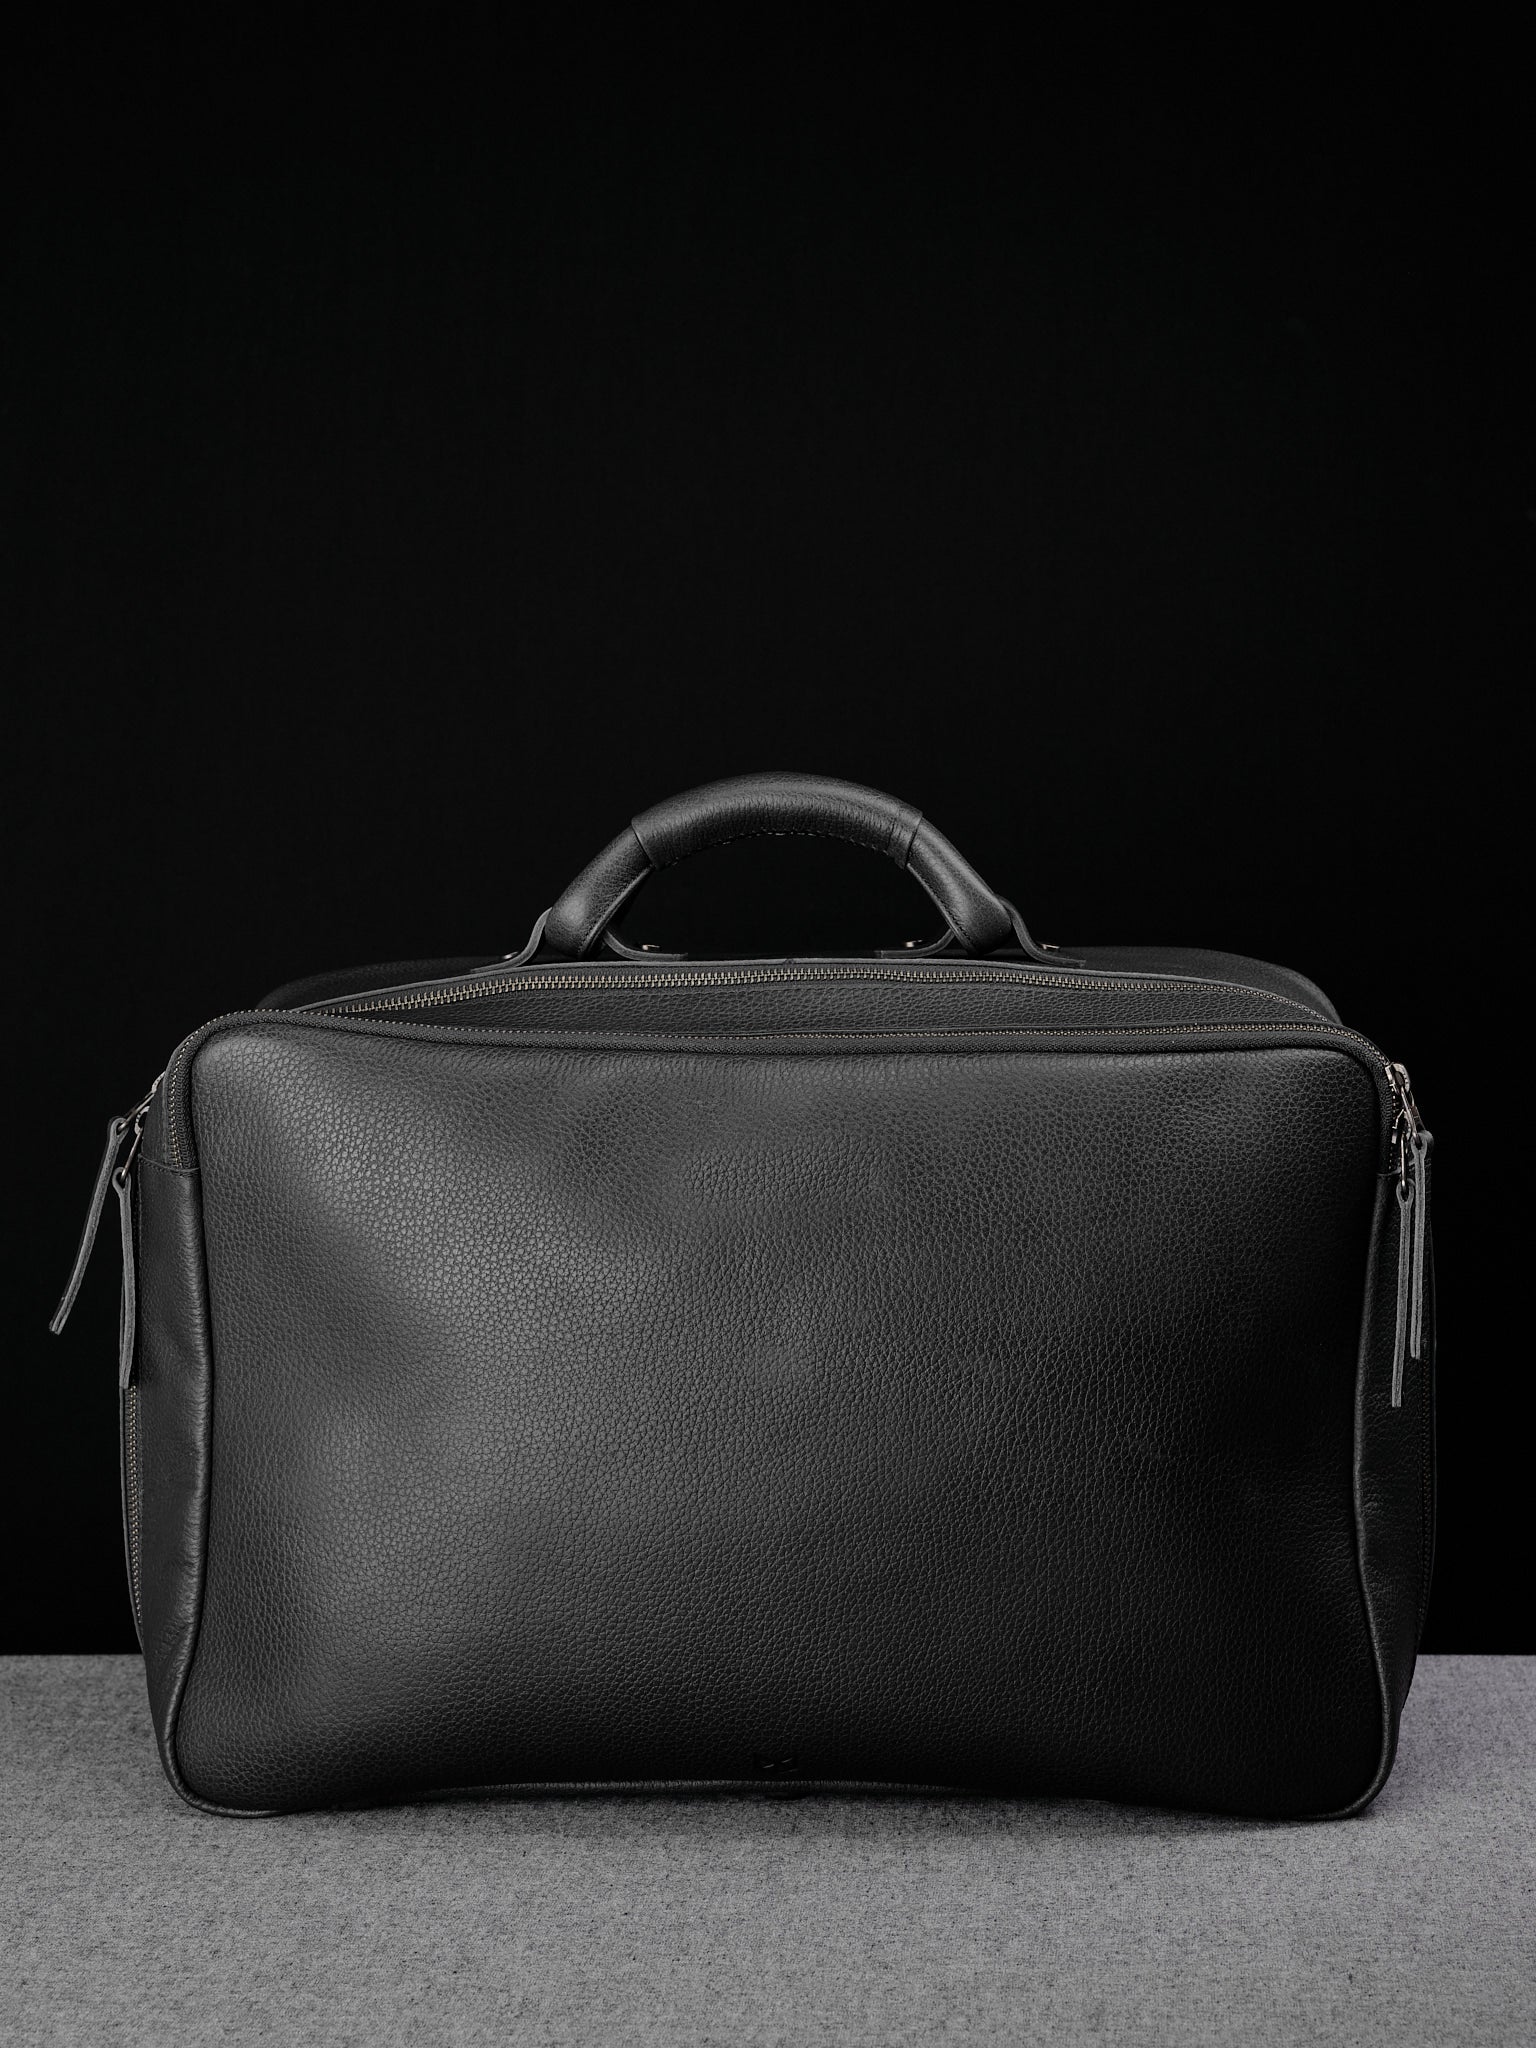 Leather Duffle Bag. Weekender Bag Black by Capra Leather